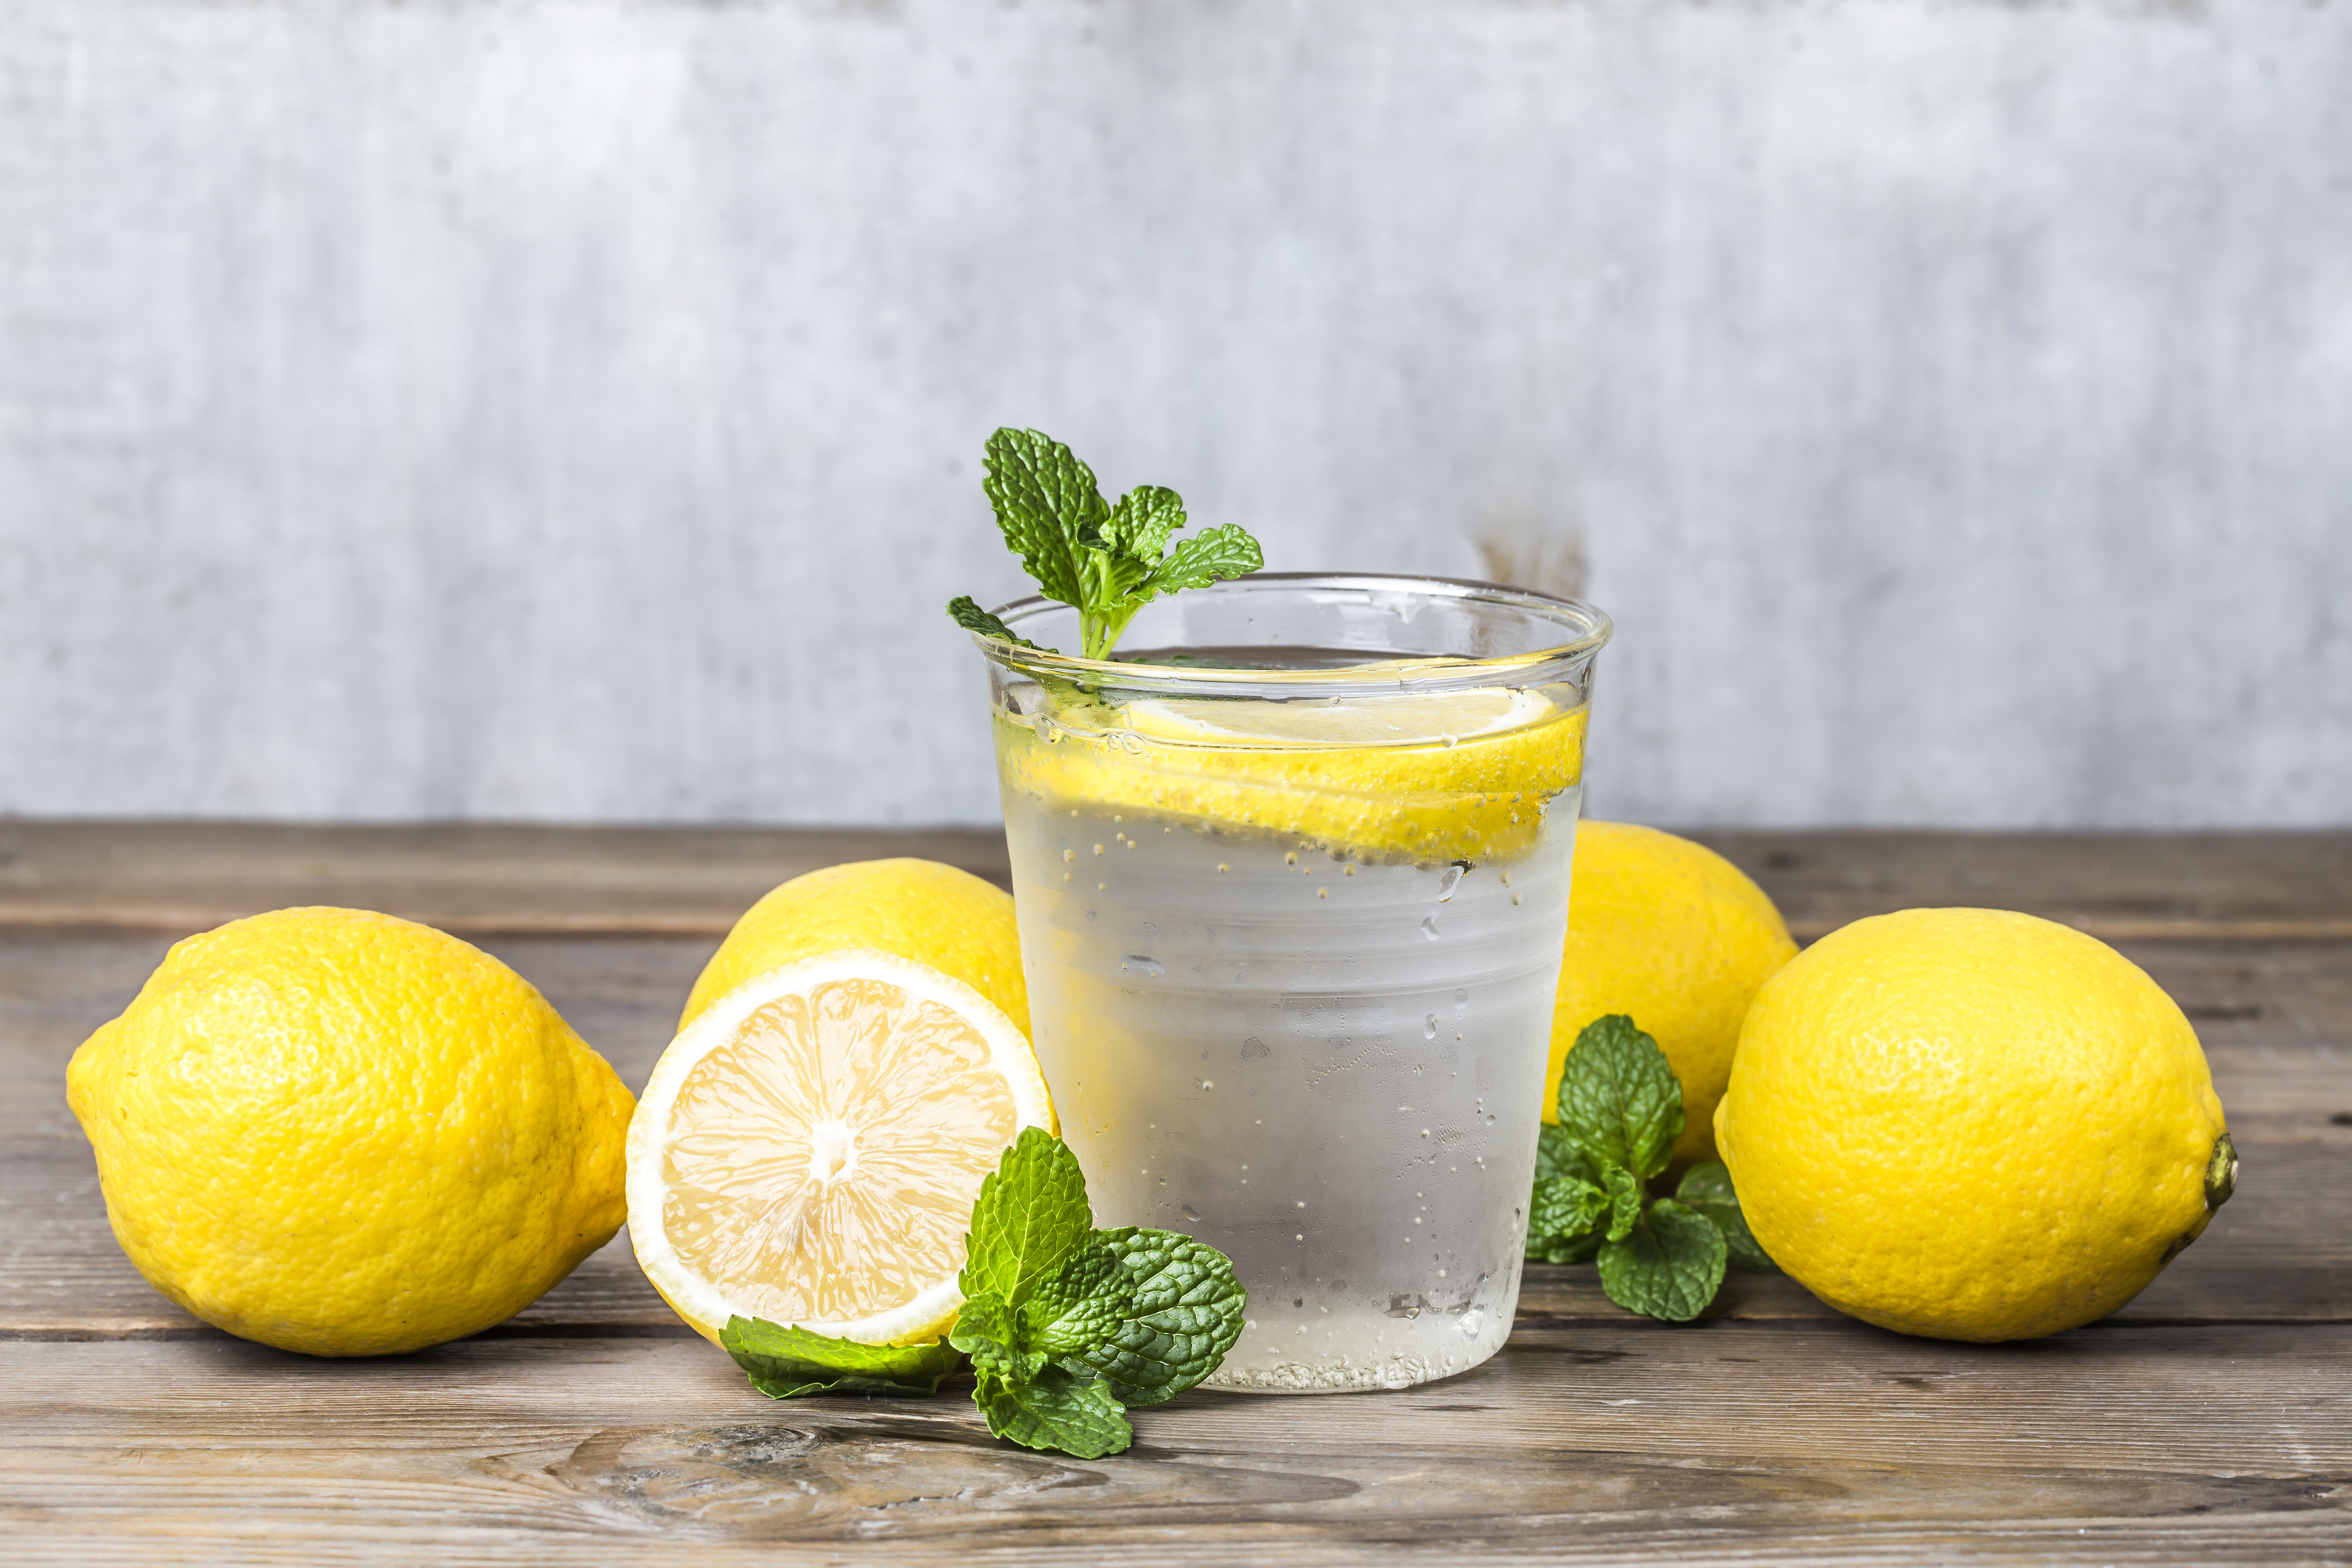 Acqua tiepida e succo di limone: gli effetti sull'organismo